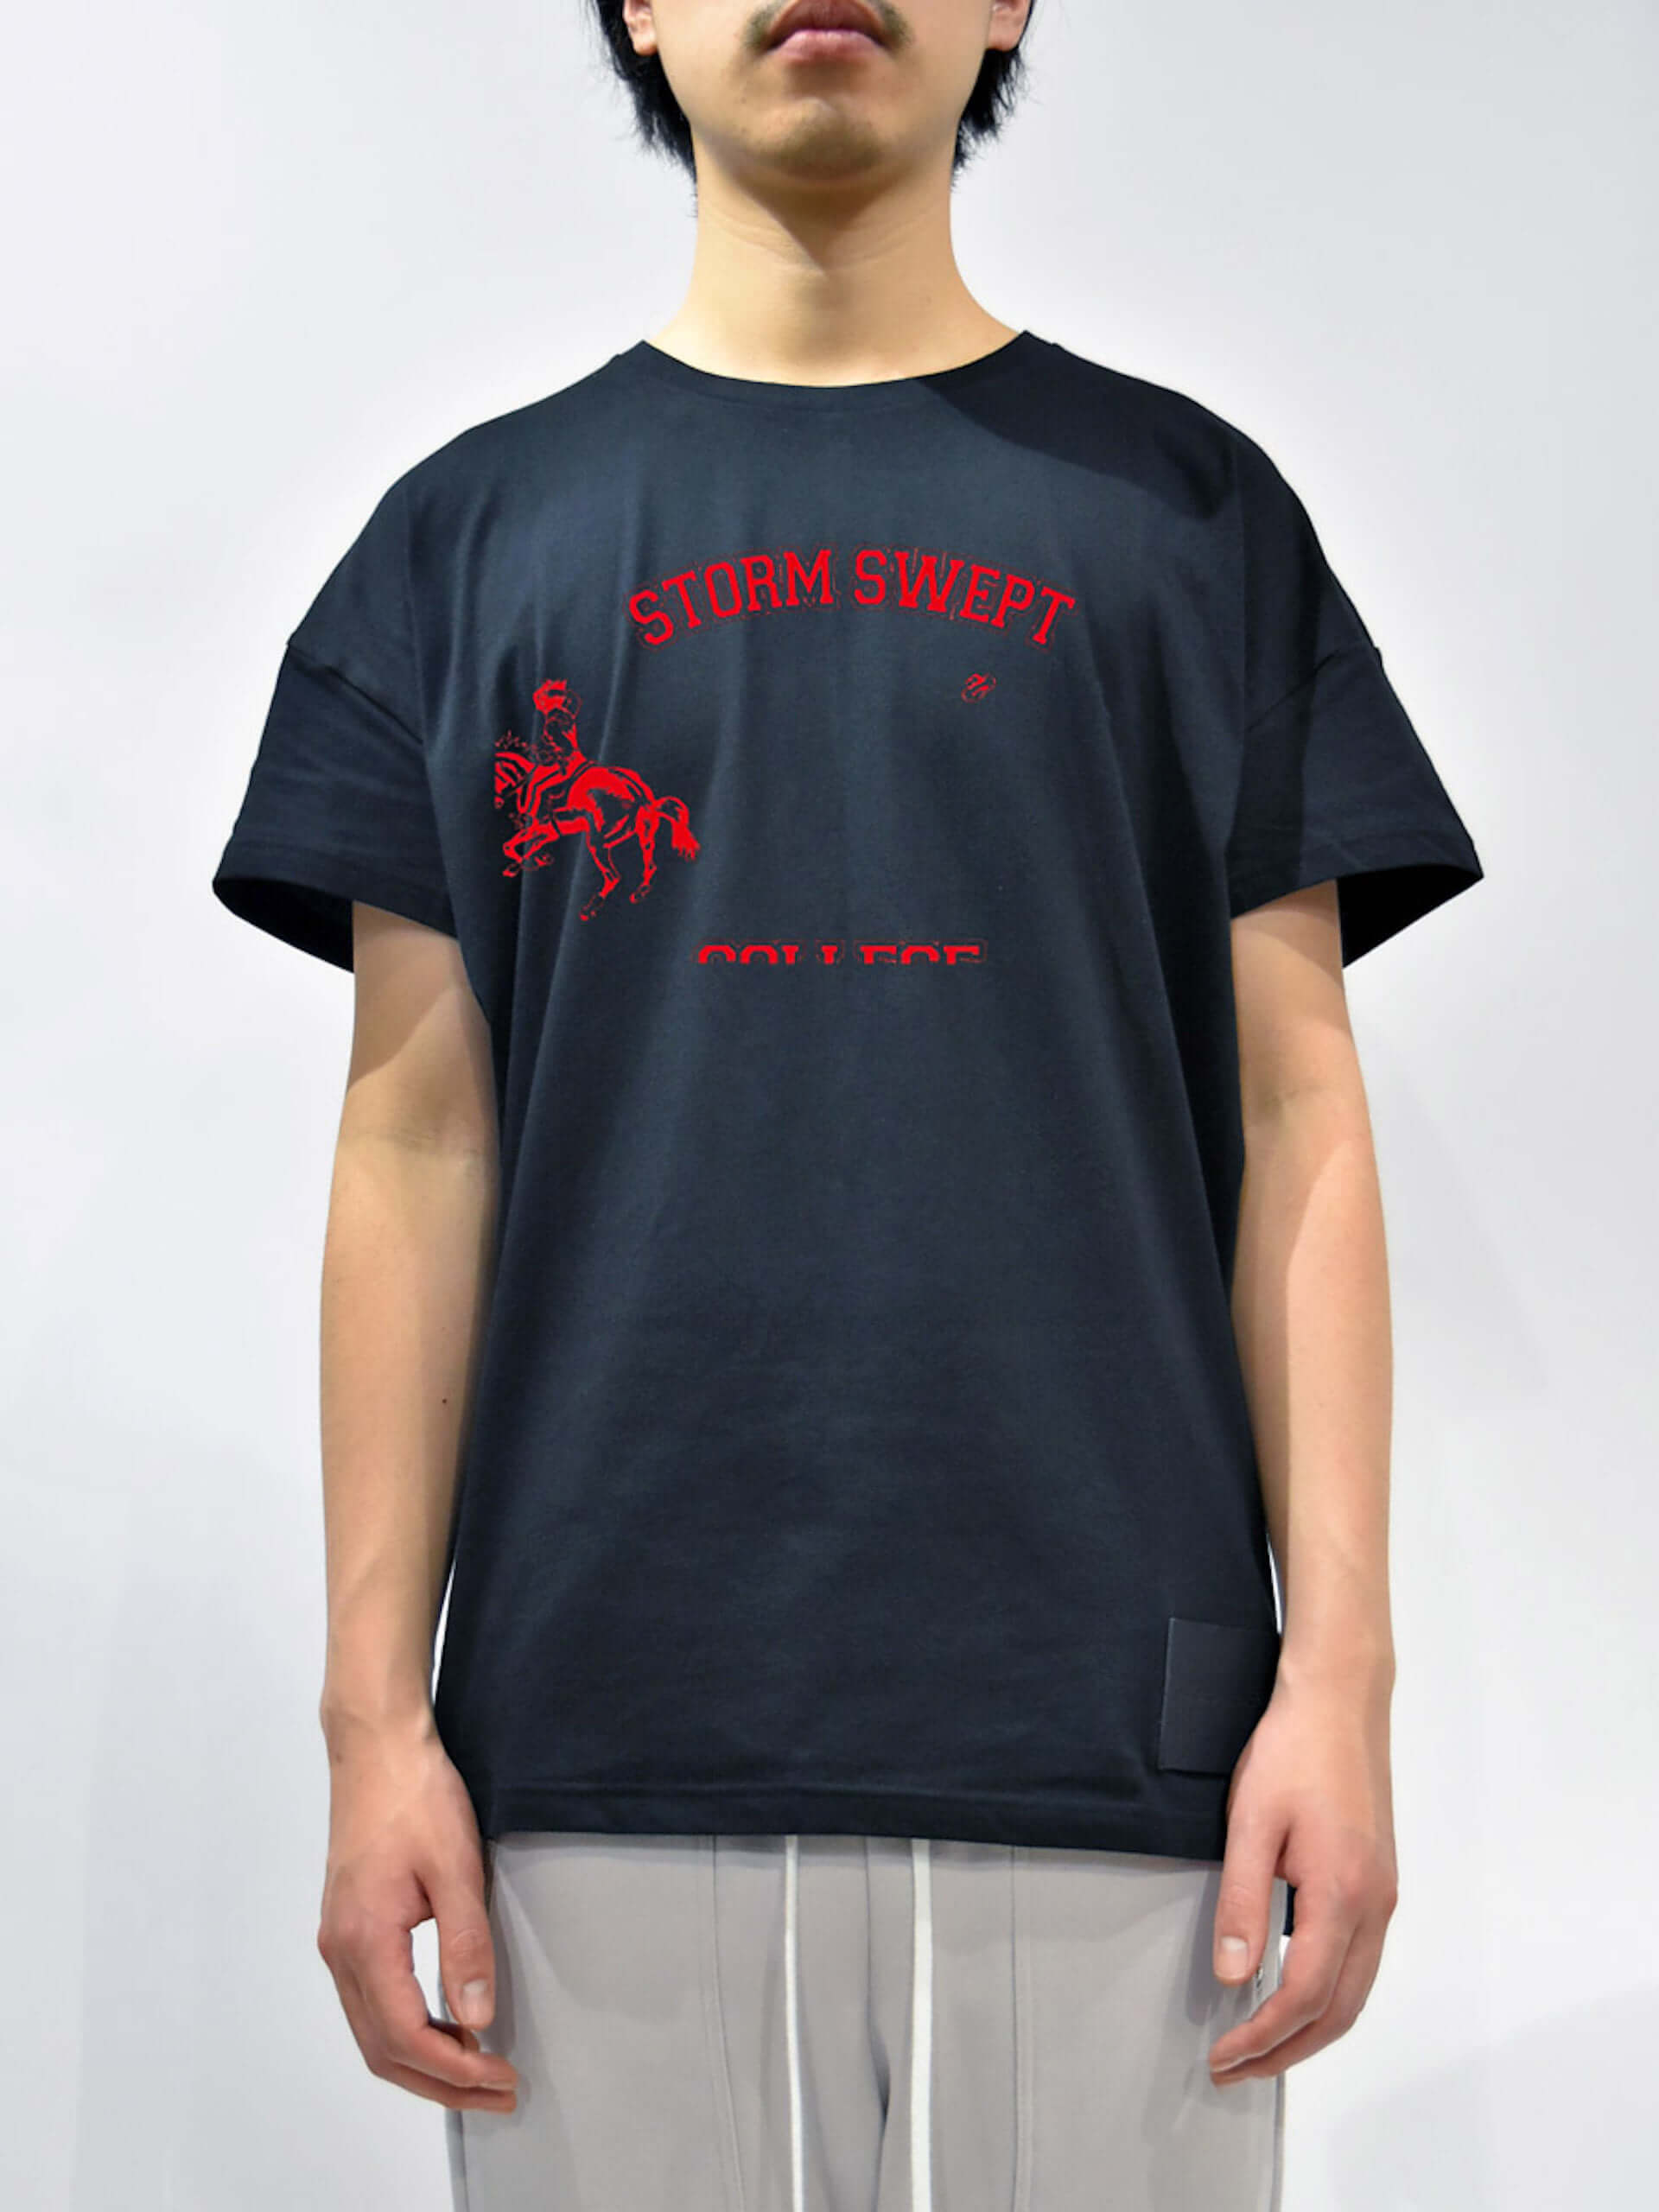 DIET BUTCHER SLIM SKINオンライン限定Tシャツに12種類のグラフィックが復刻！「GRAPHIC GALLERY」カテゴリがオープン 200415_graphic_gallery_18-1920x2560